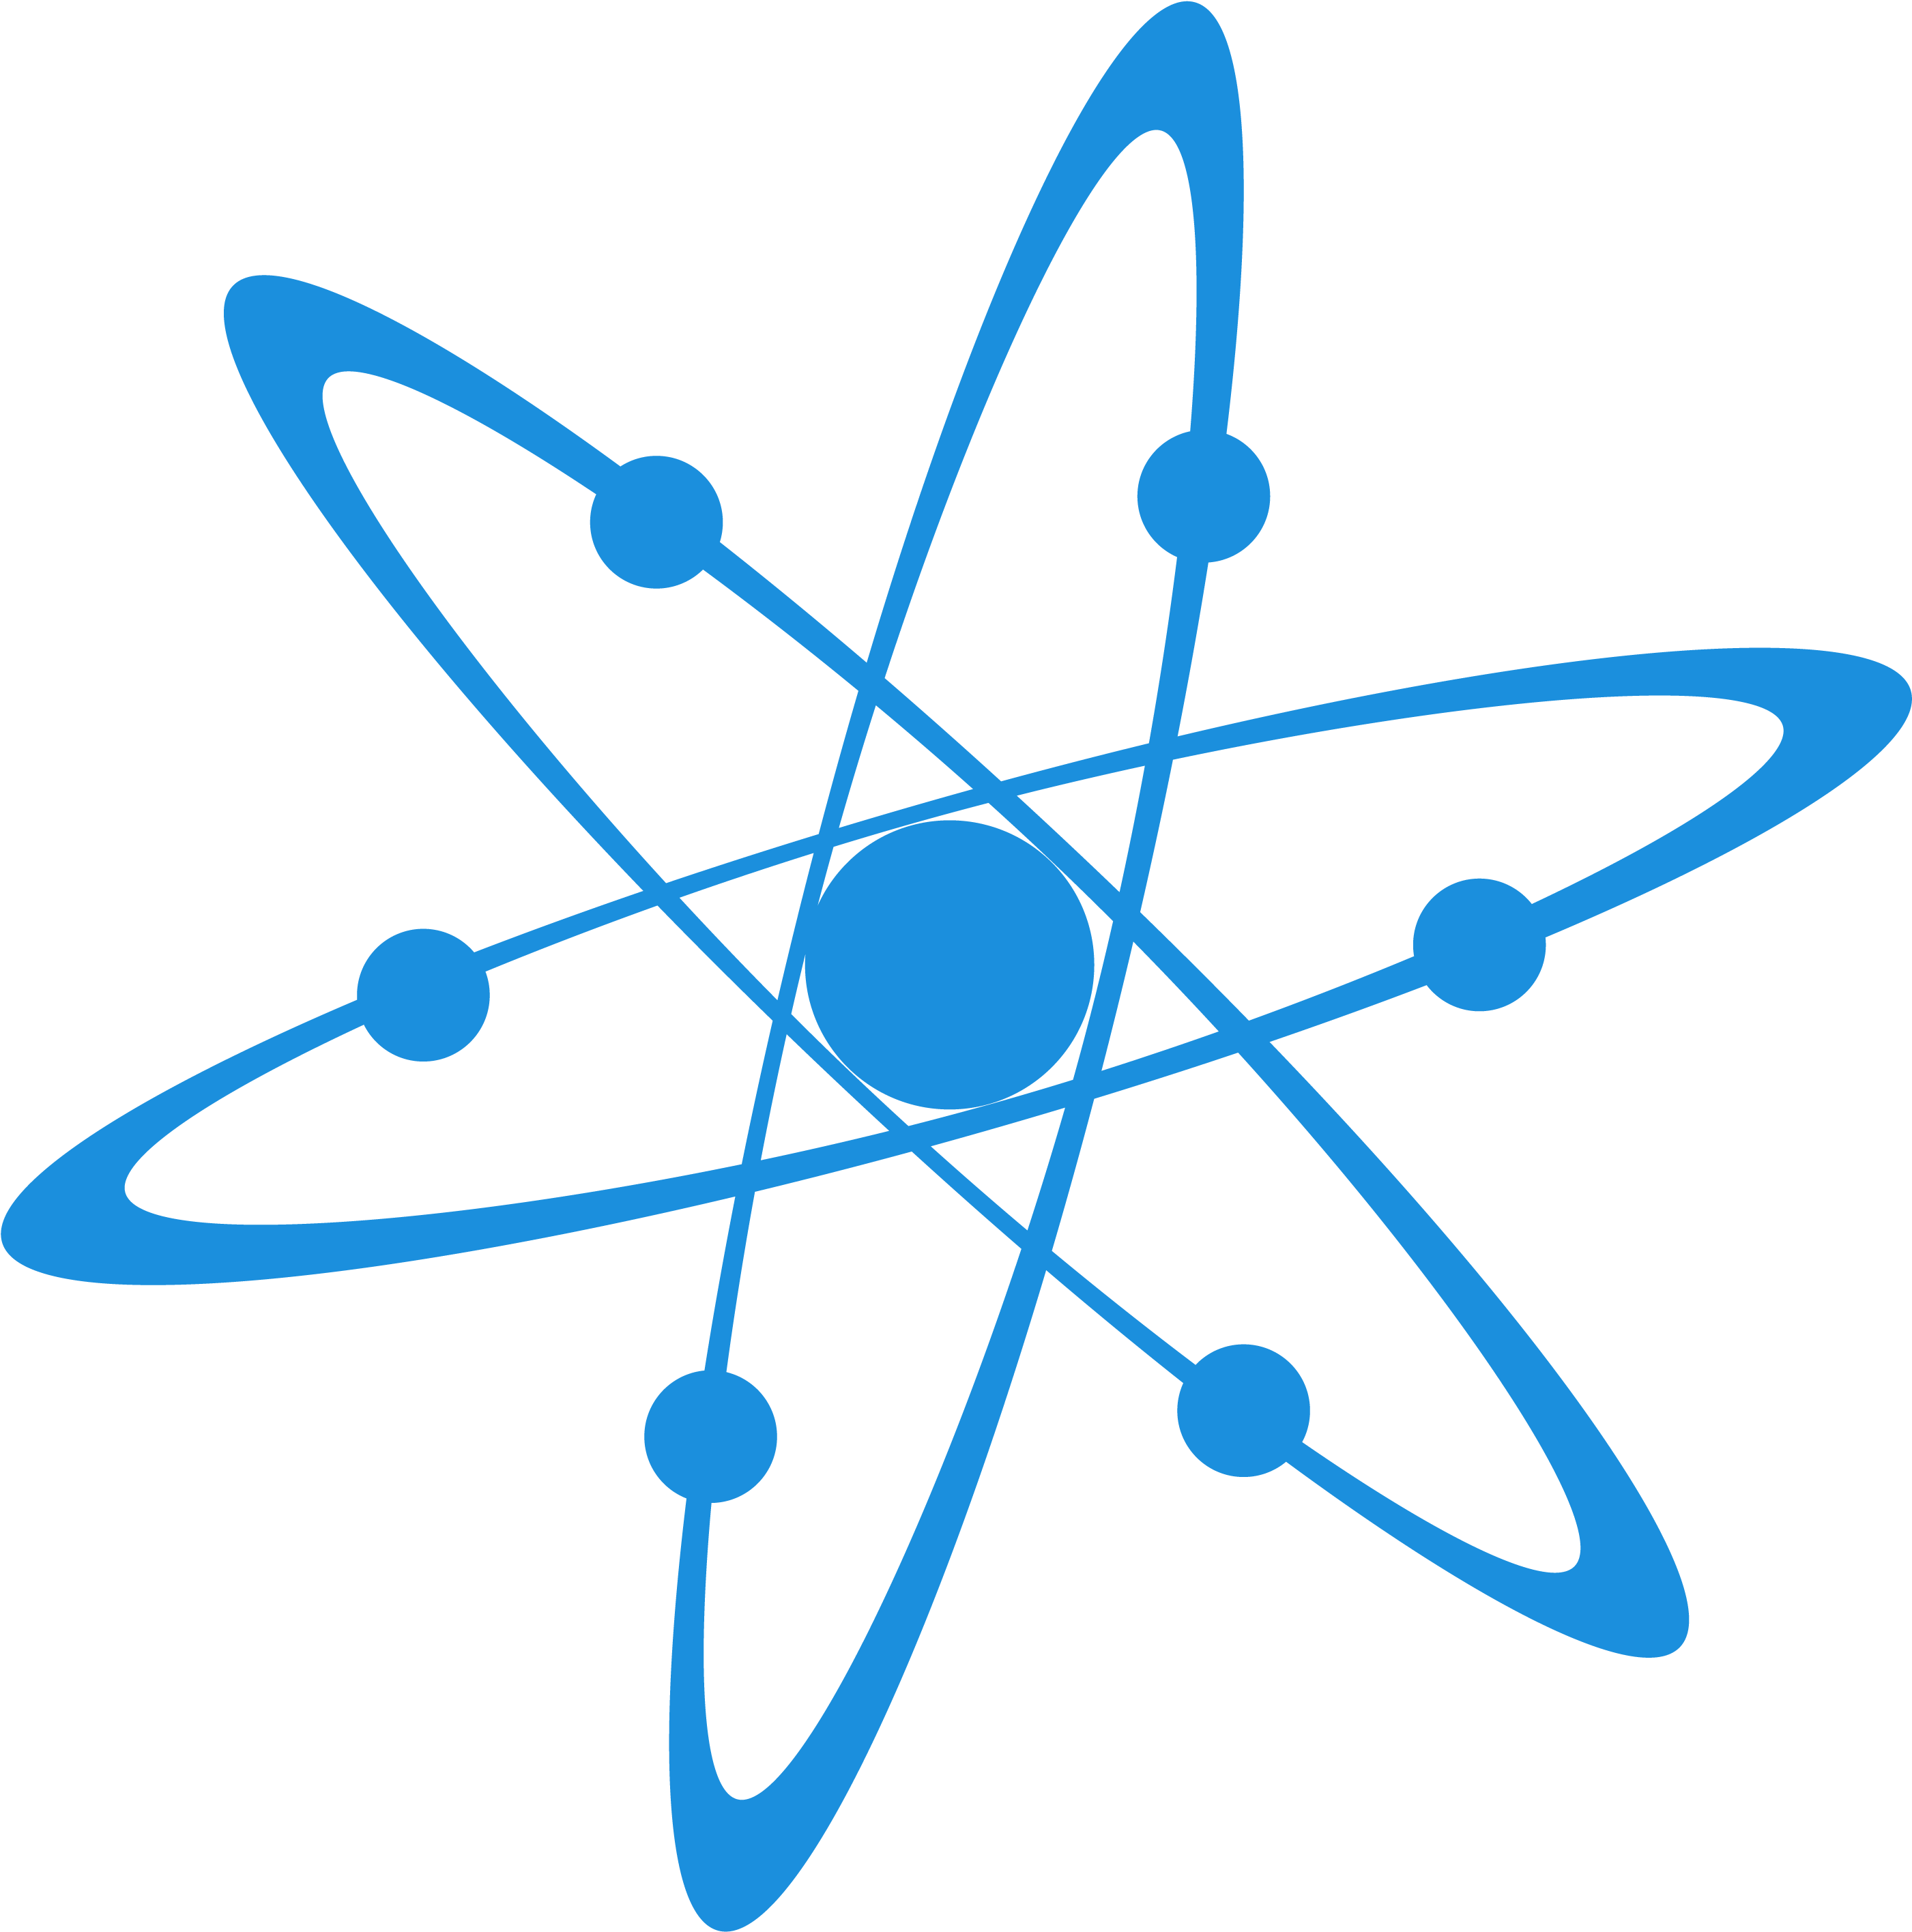 Neutron Mobile Neutron Mobile - Atom Science (2861x2861)